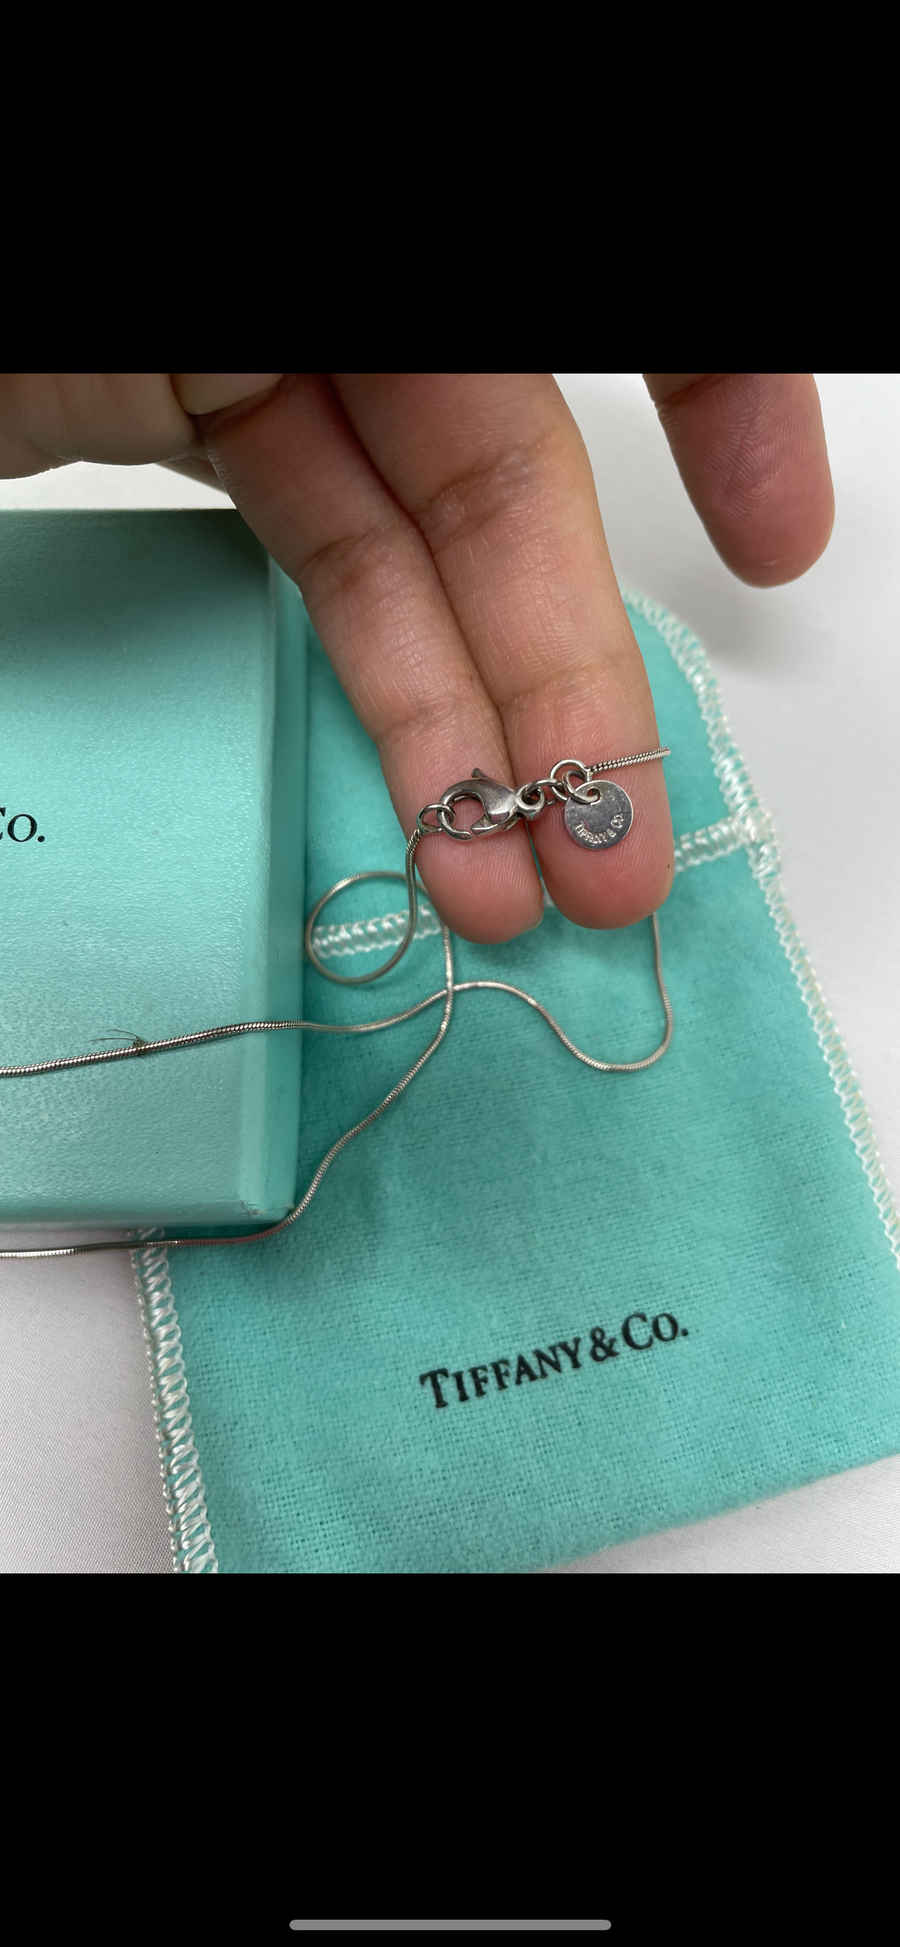 Tiffany Heart Necklace!